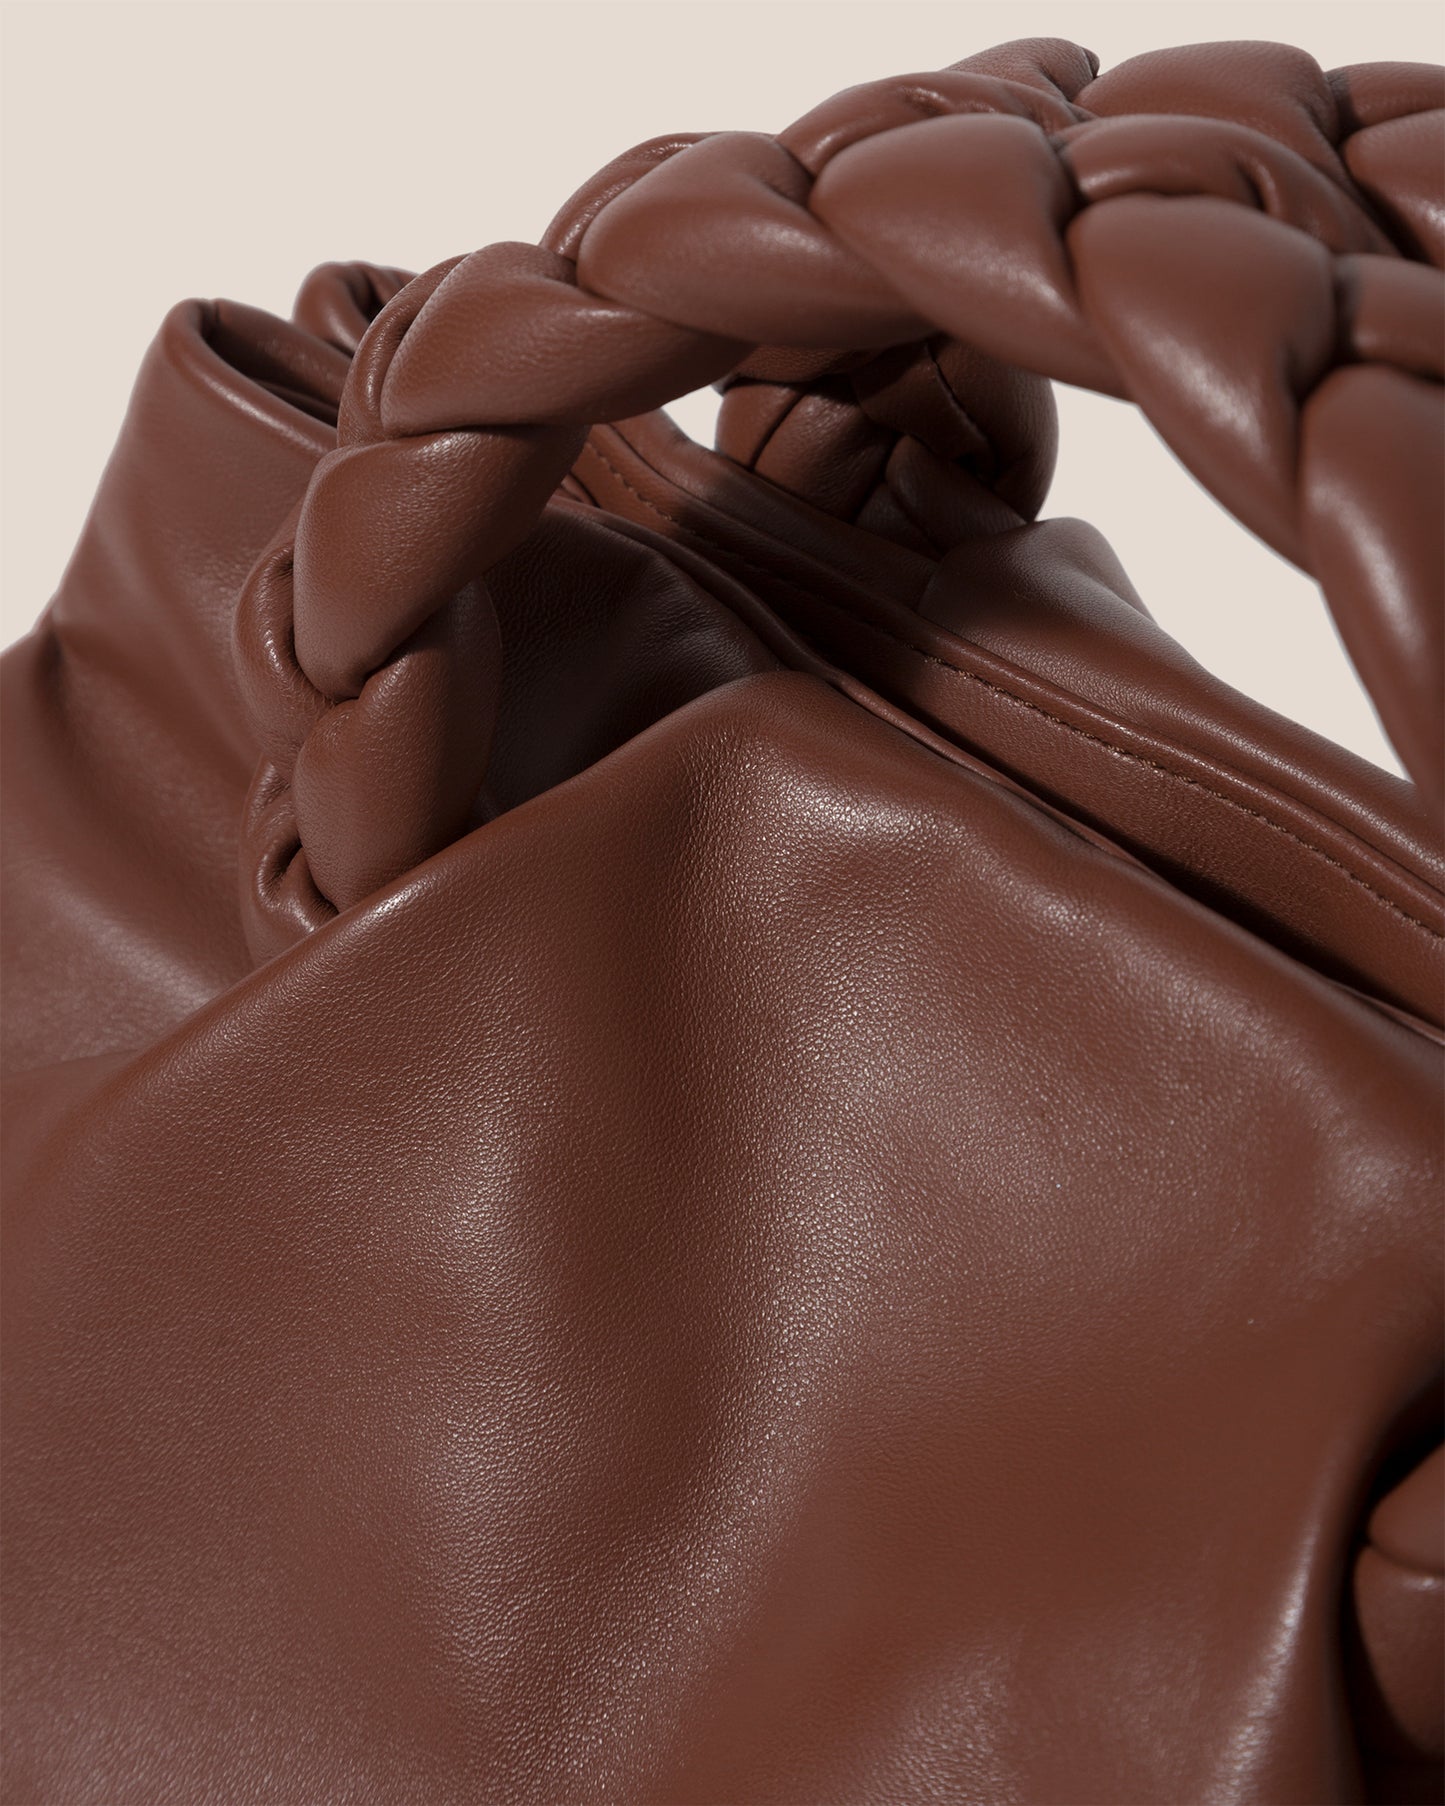 Leather handbag Hereu Black in Leather - 37175272